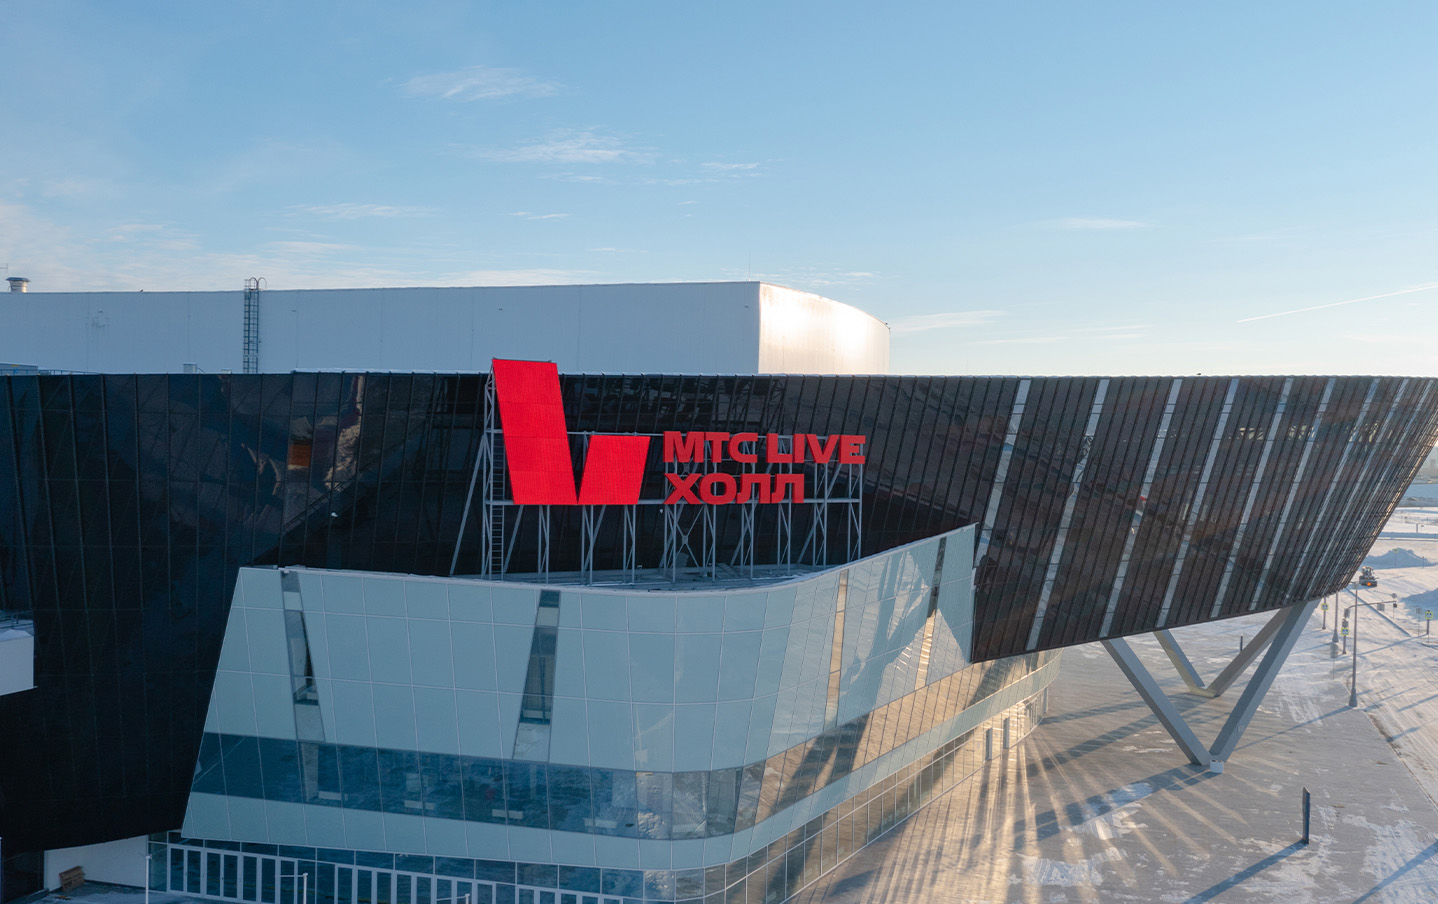 МТС Live Холл Екатеринбург в Екатеринбурге - афиша концертов и билеты  онлайн на МТС Live